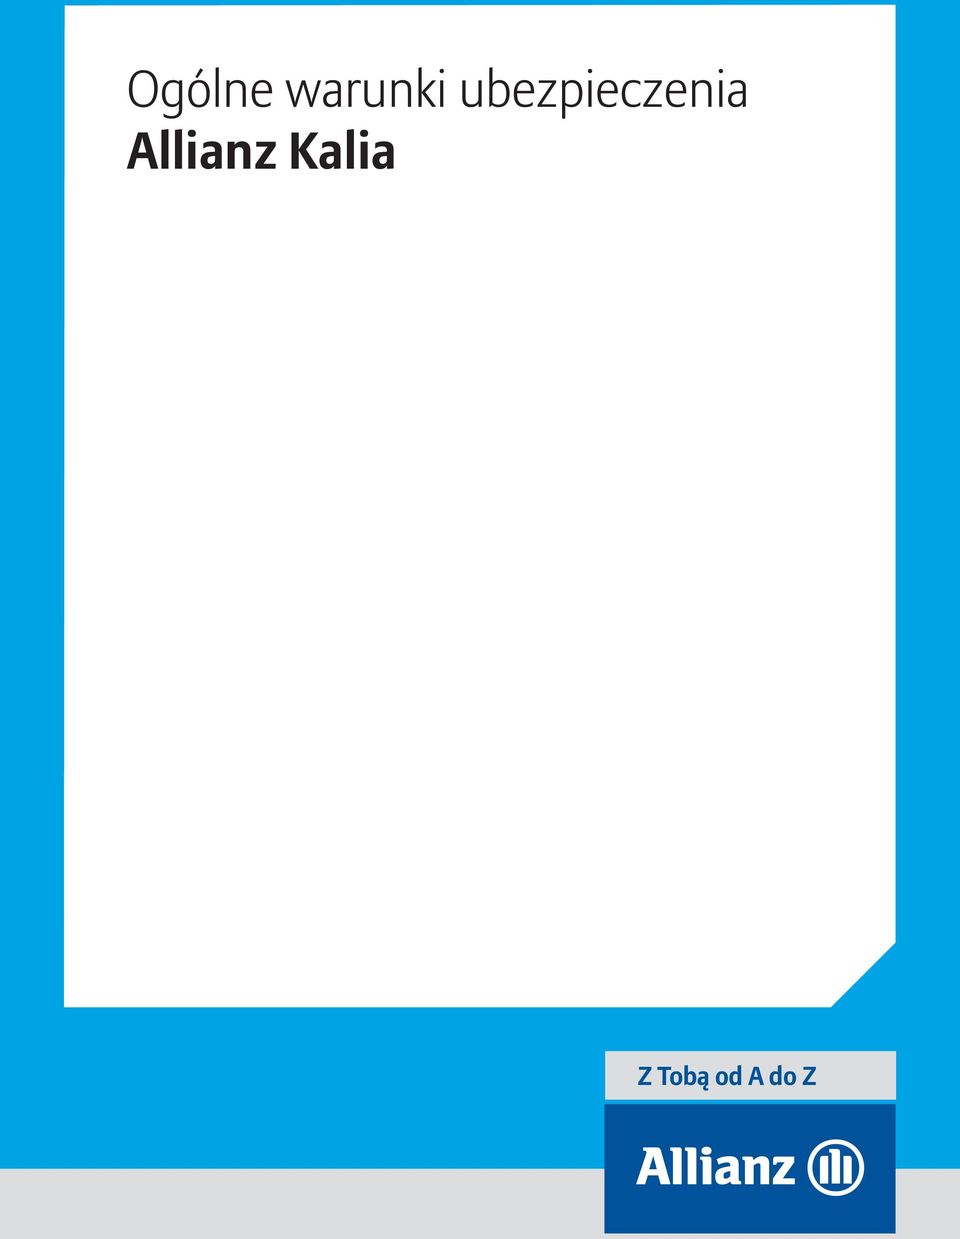 Allianz Kalia